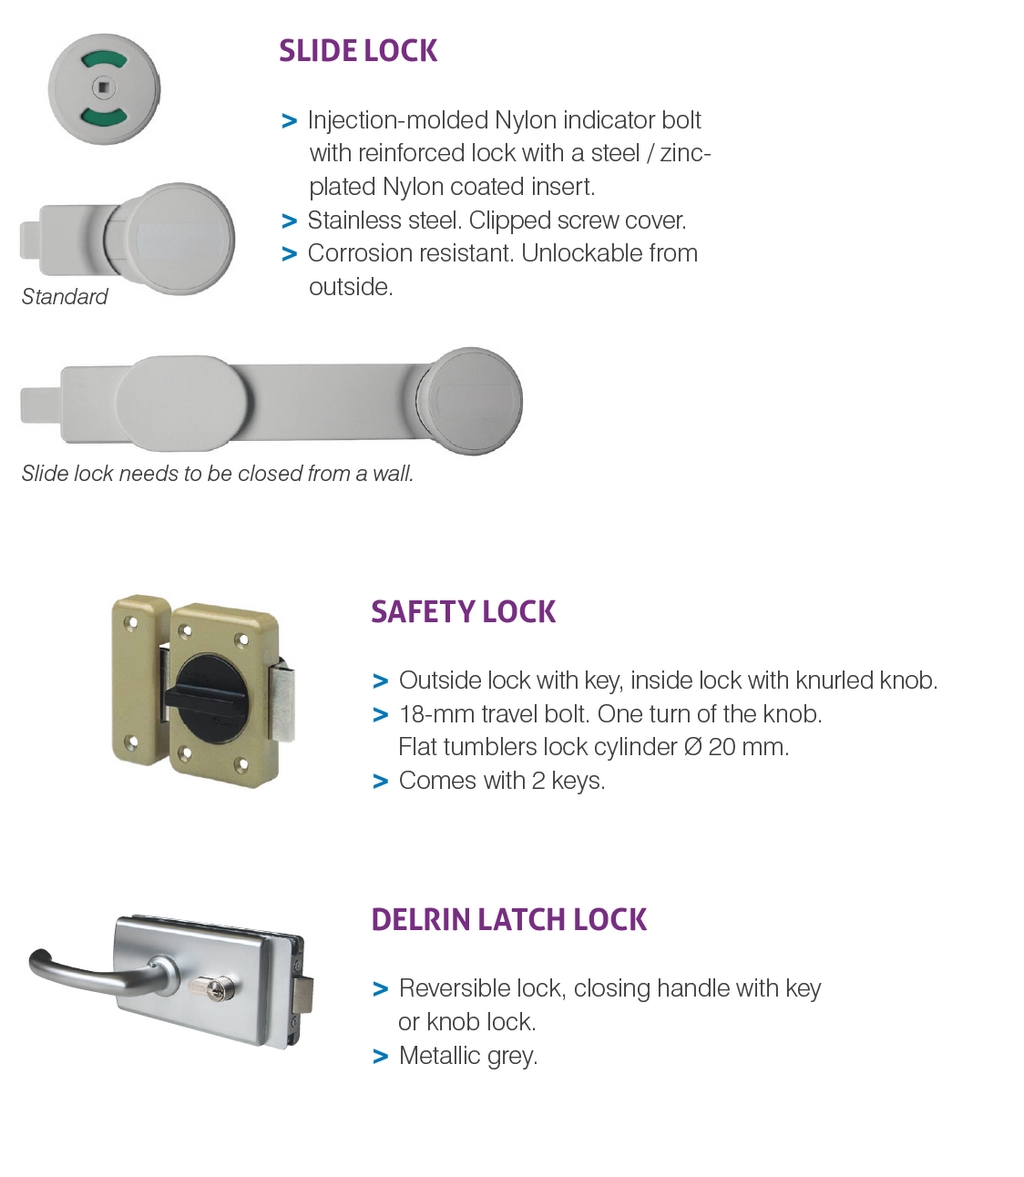 Optional locks